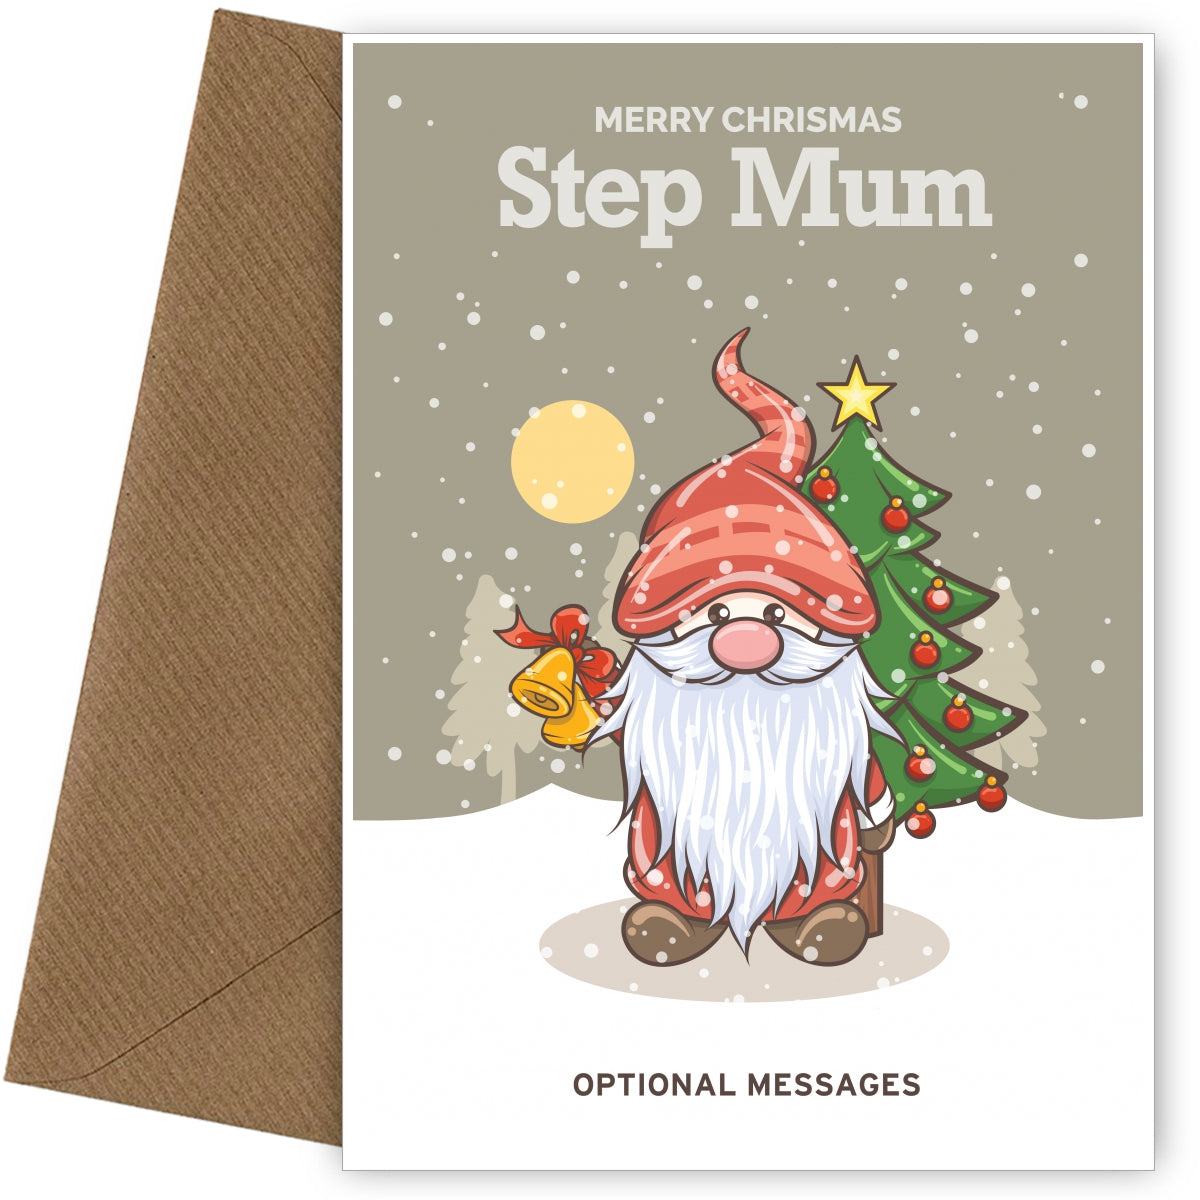 Merry Christmas Card for Step Mum - Festive Gnome